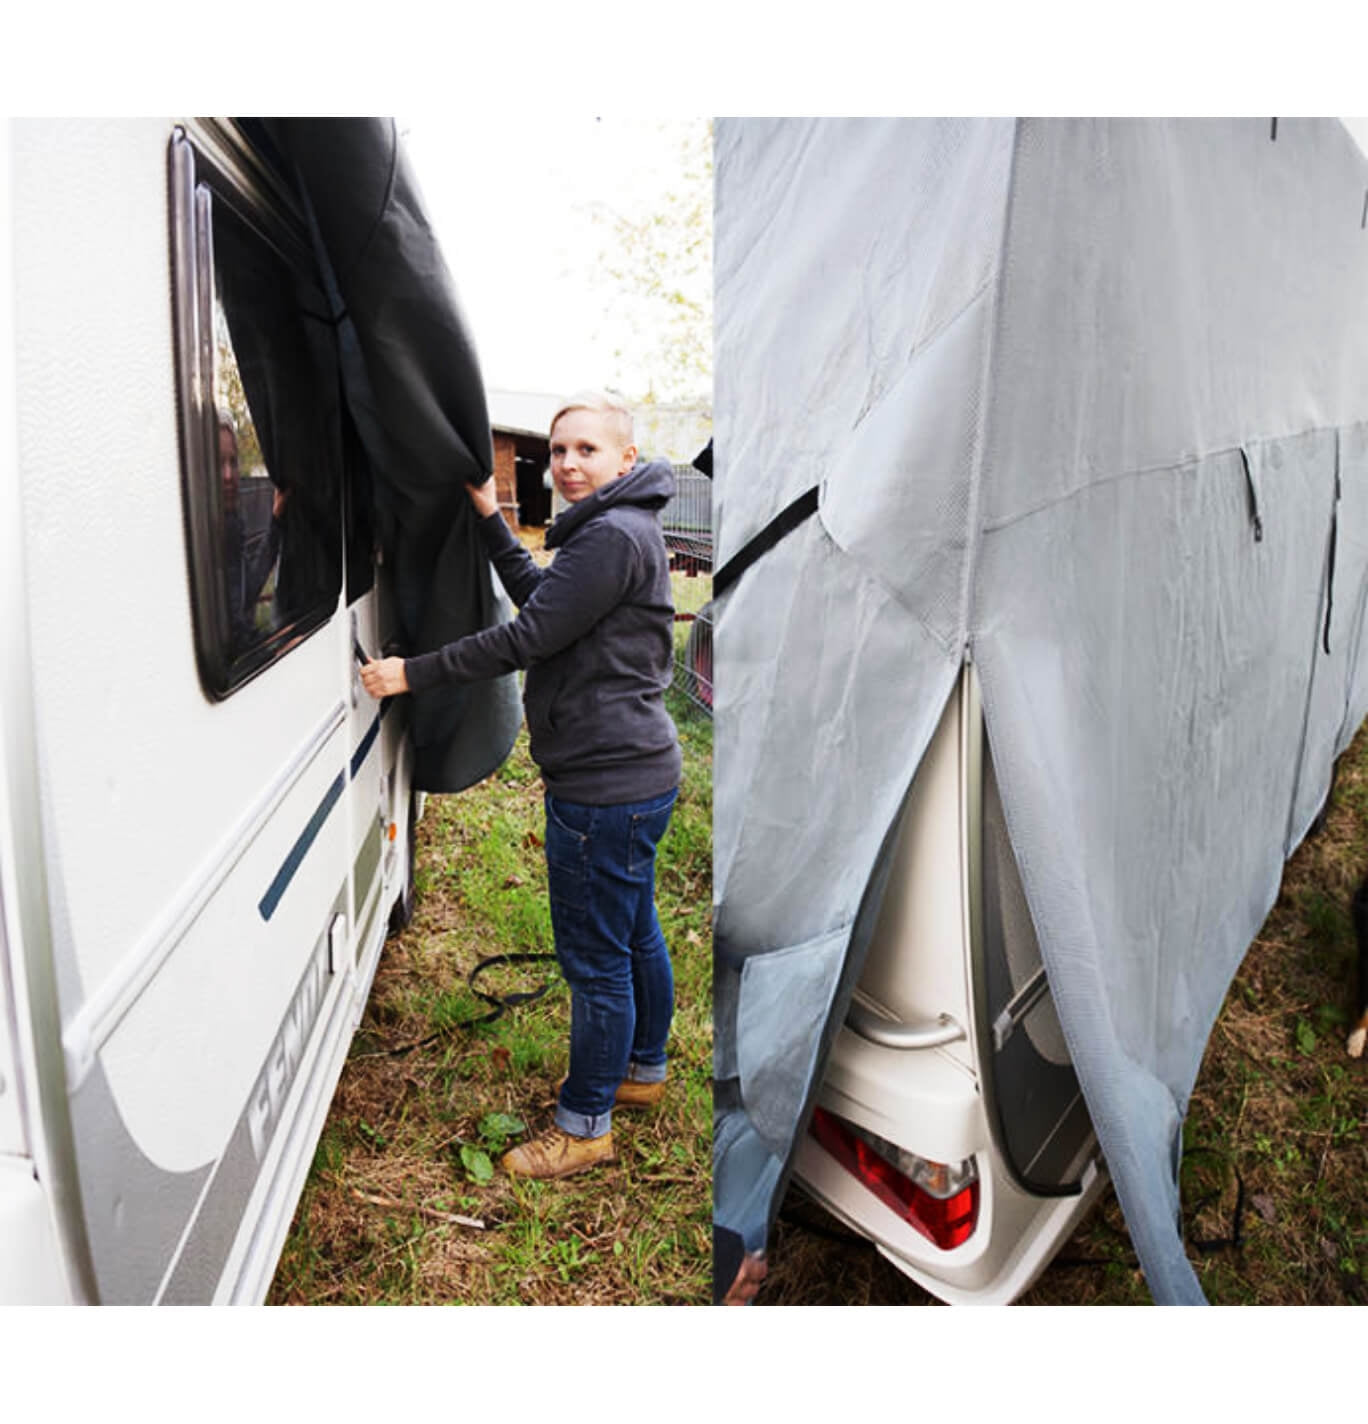 Reimo Breathable Zipper Caravan Cover | 762cm x 223cm Image